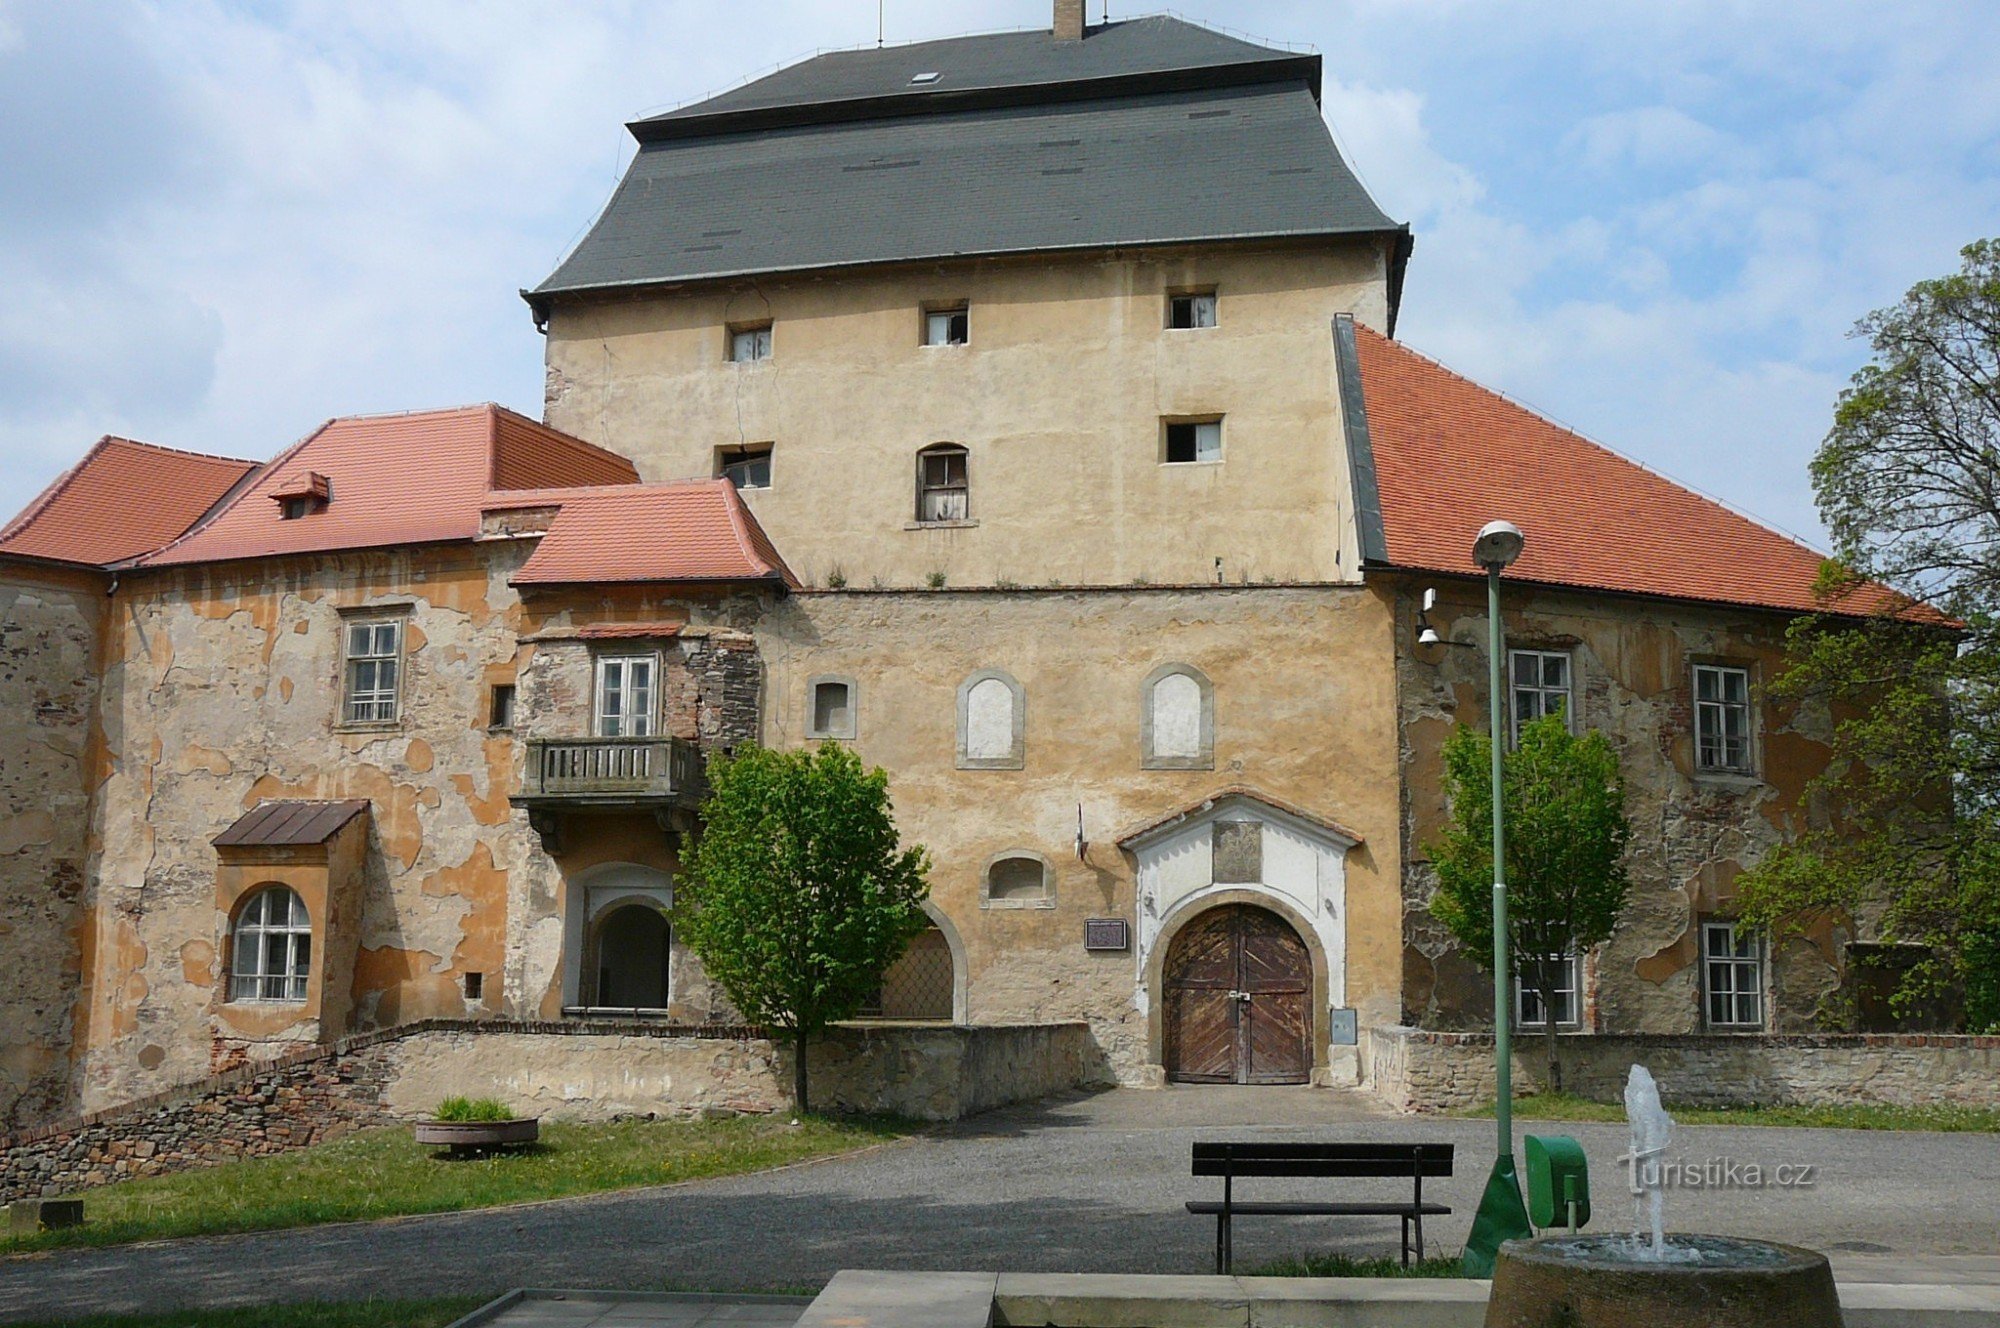 Château de Miroslav